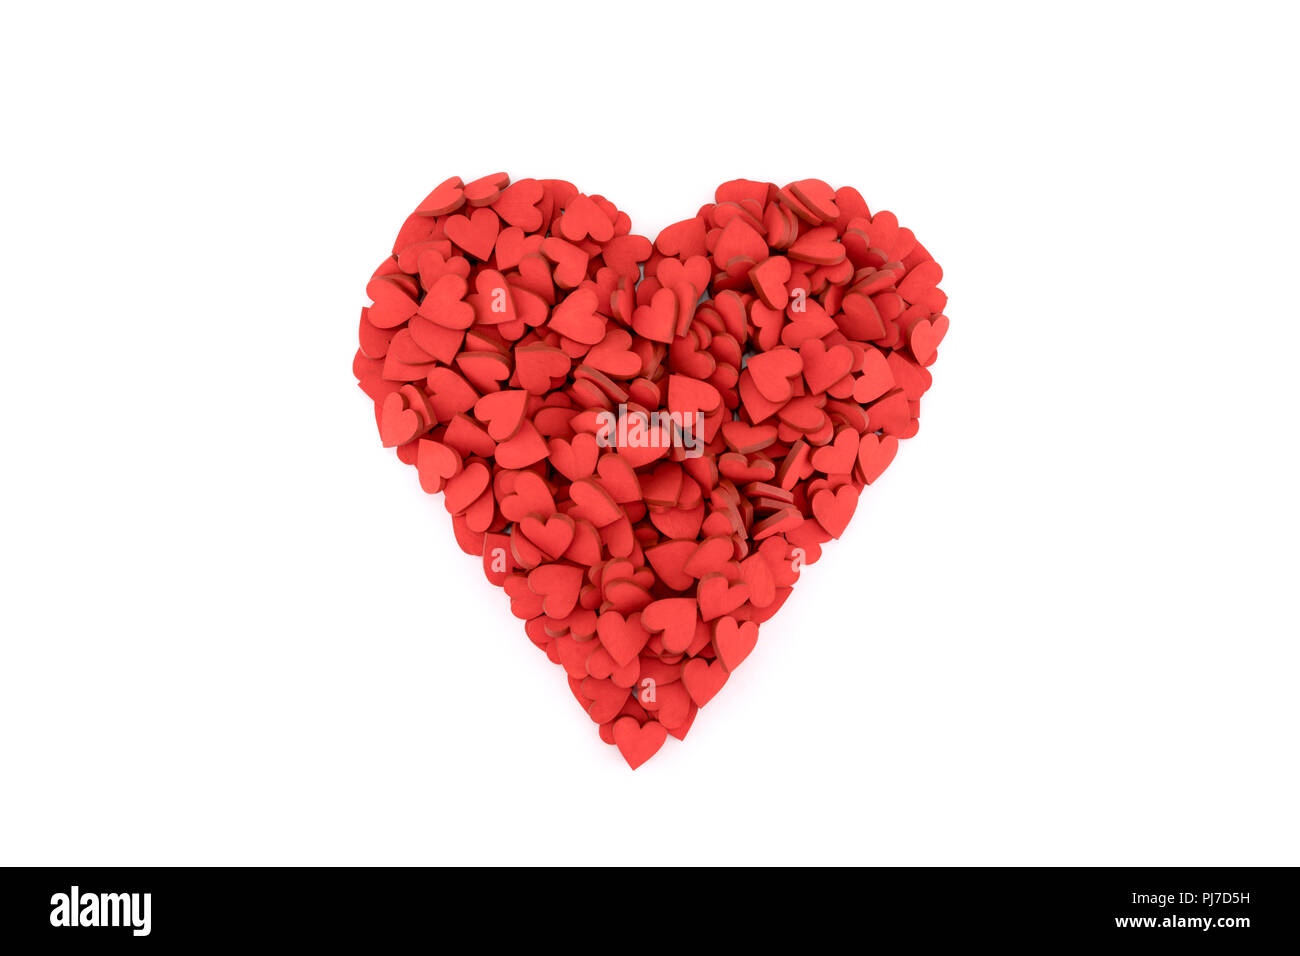 Coeur rouge fait de petits coeurs sur fond blanc Banque D'Images